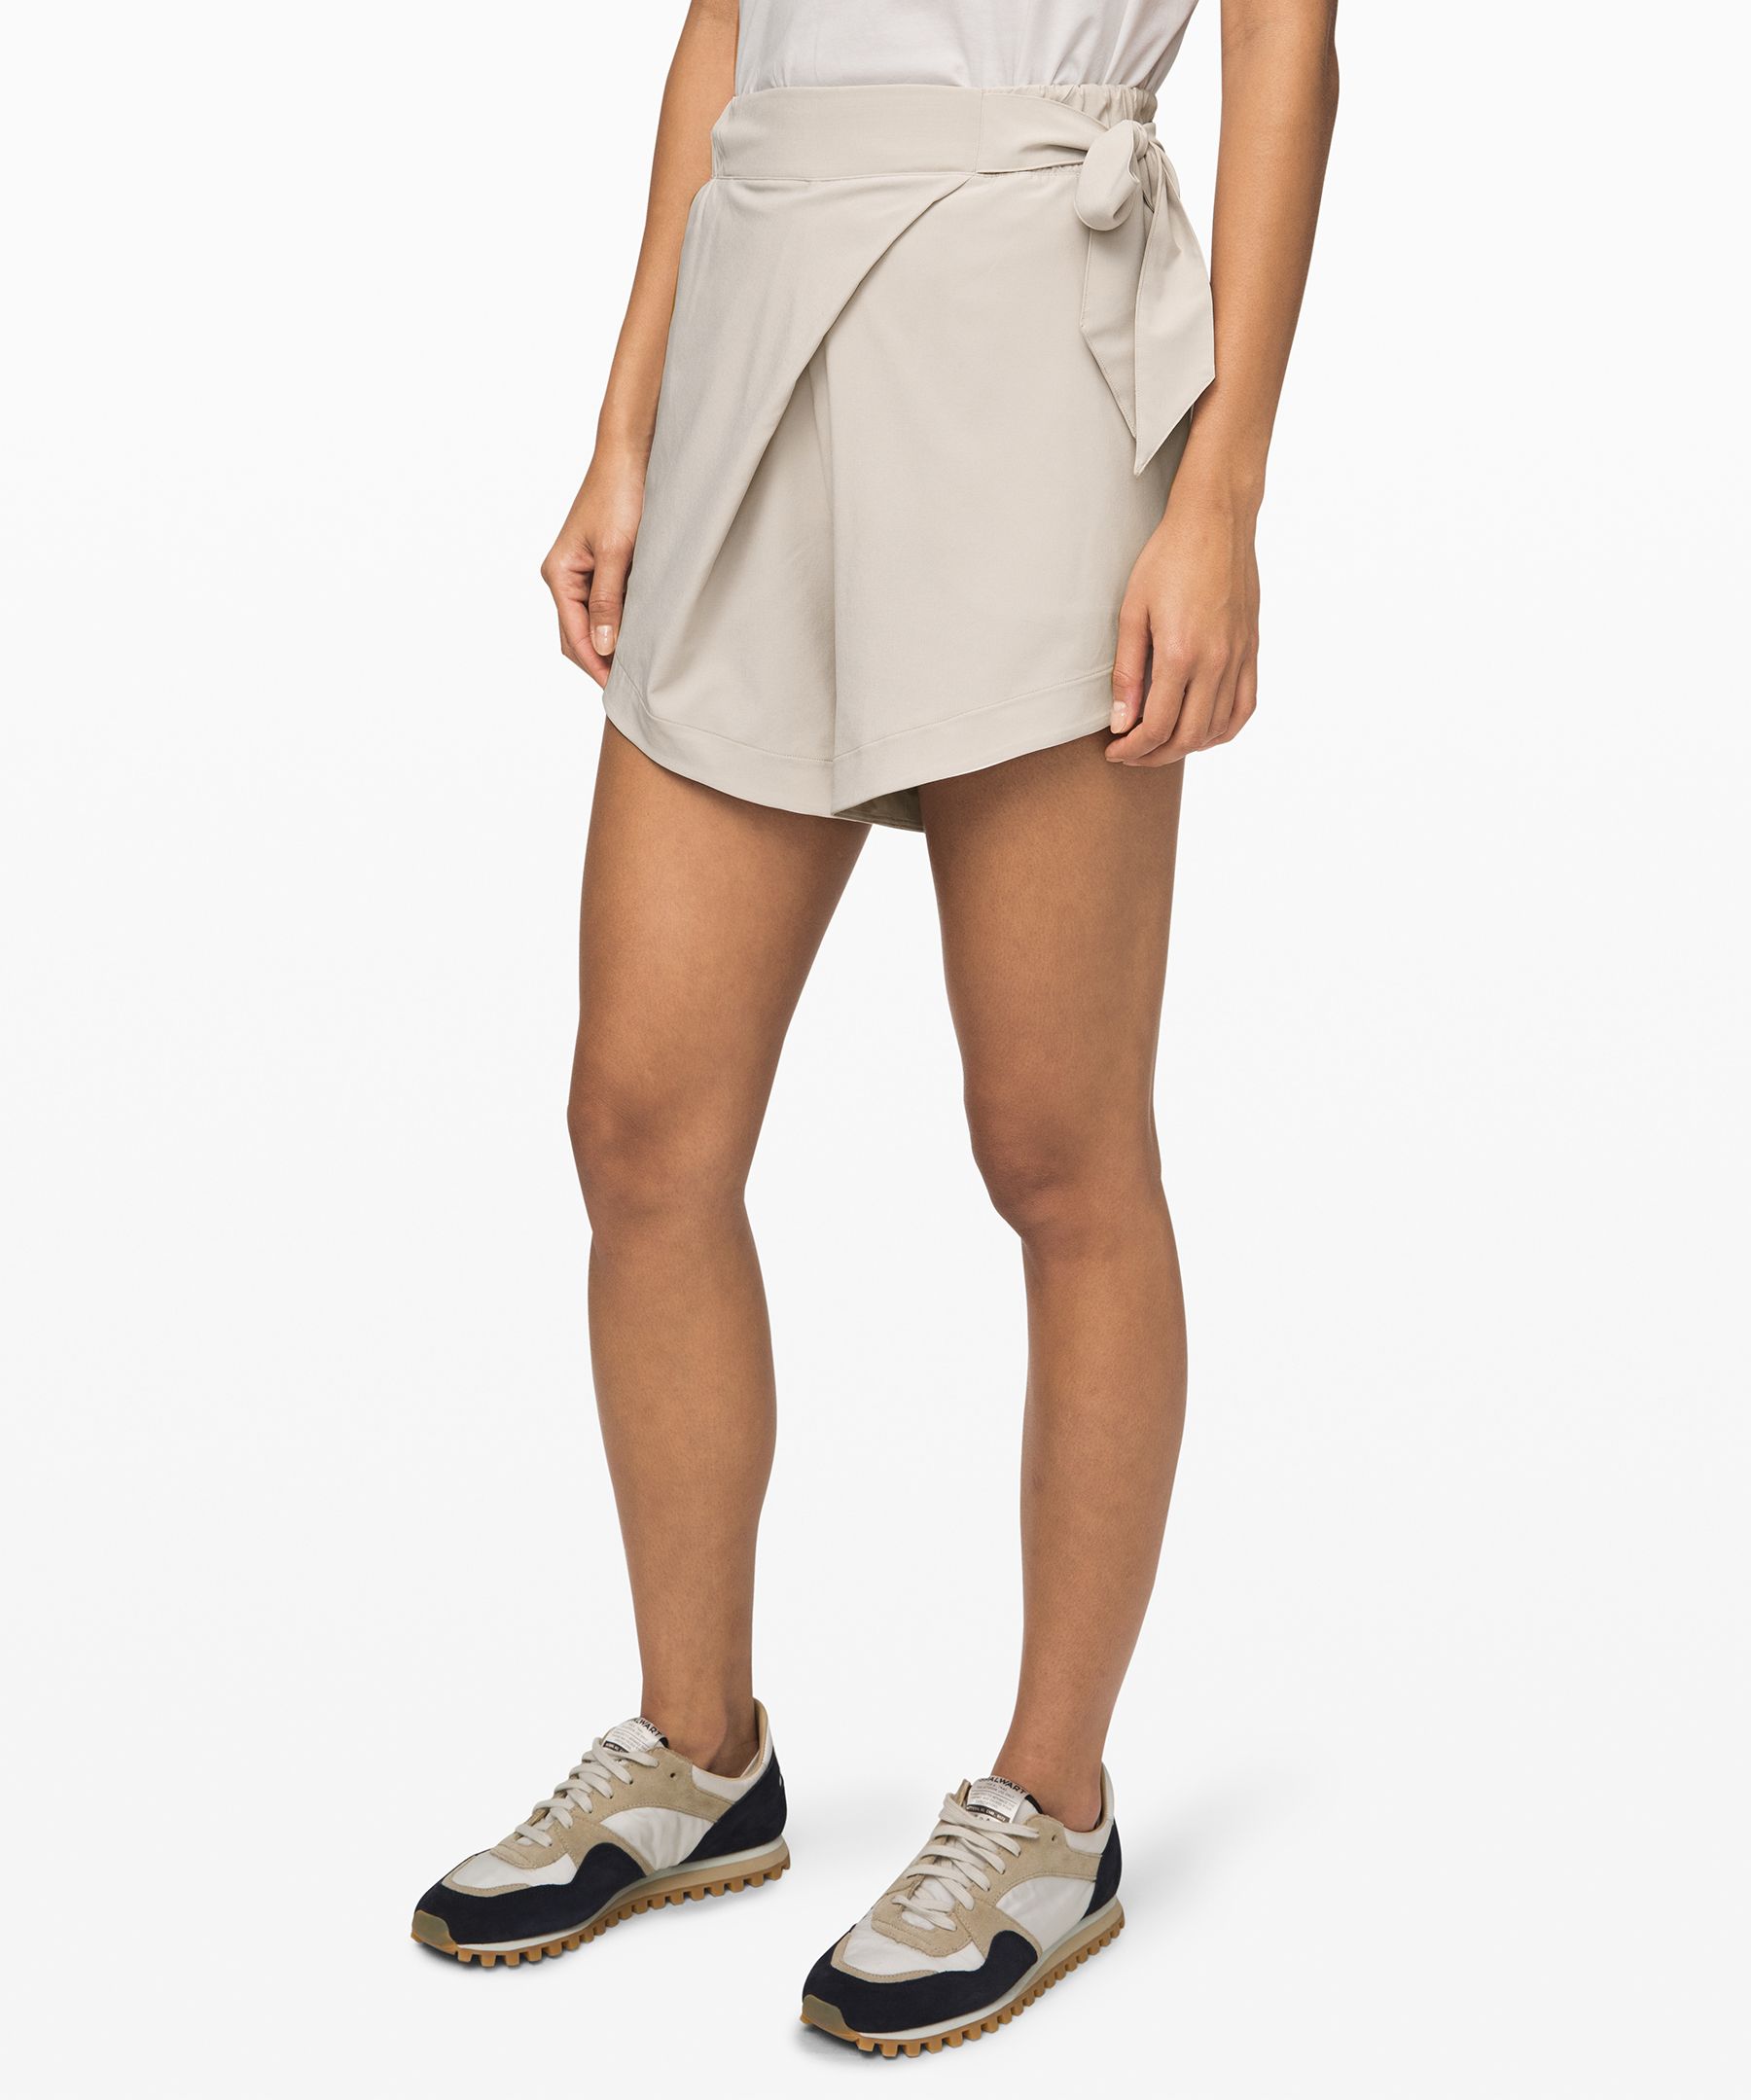 lululemon dress shorts